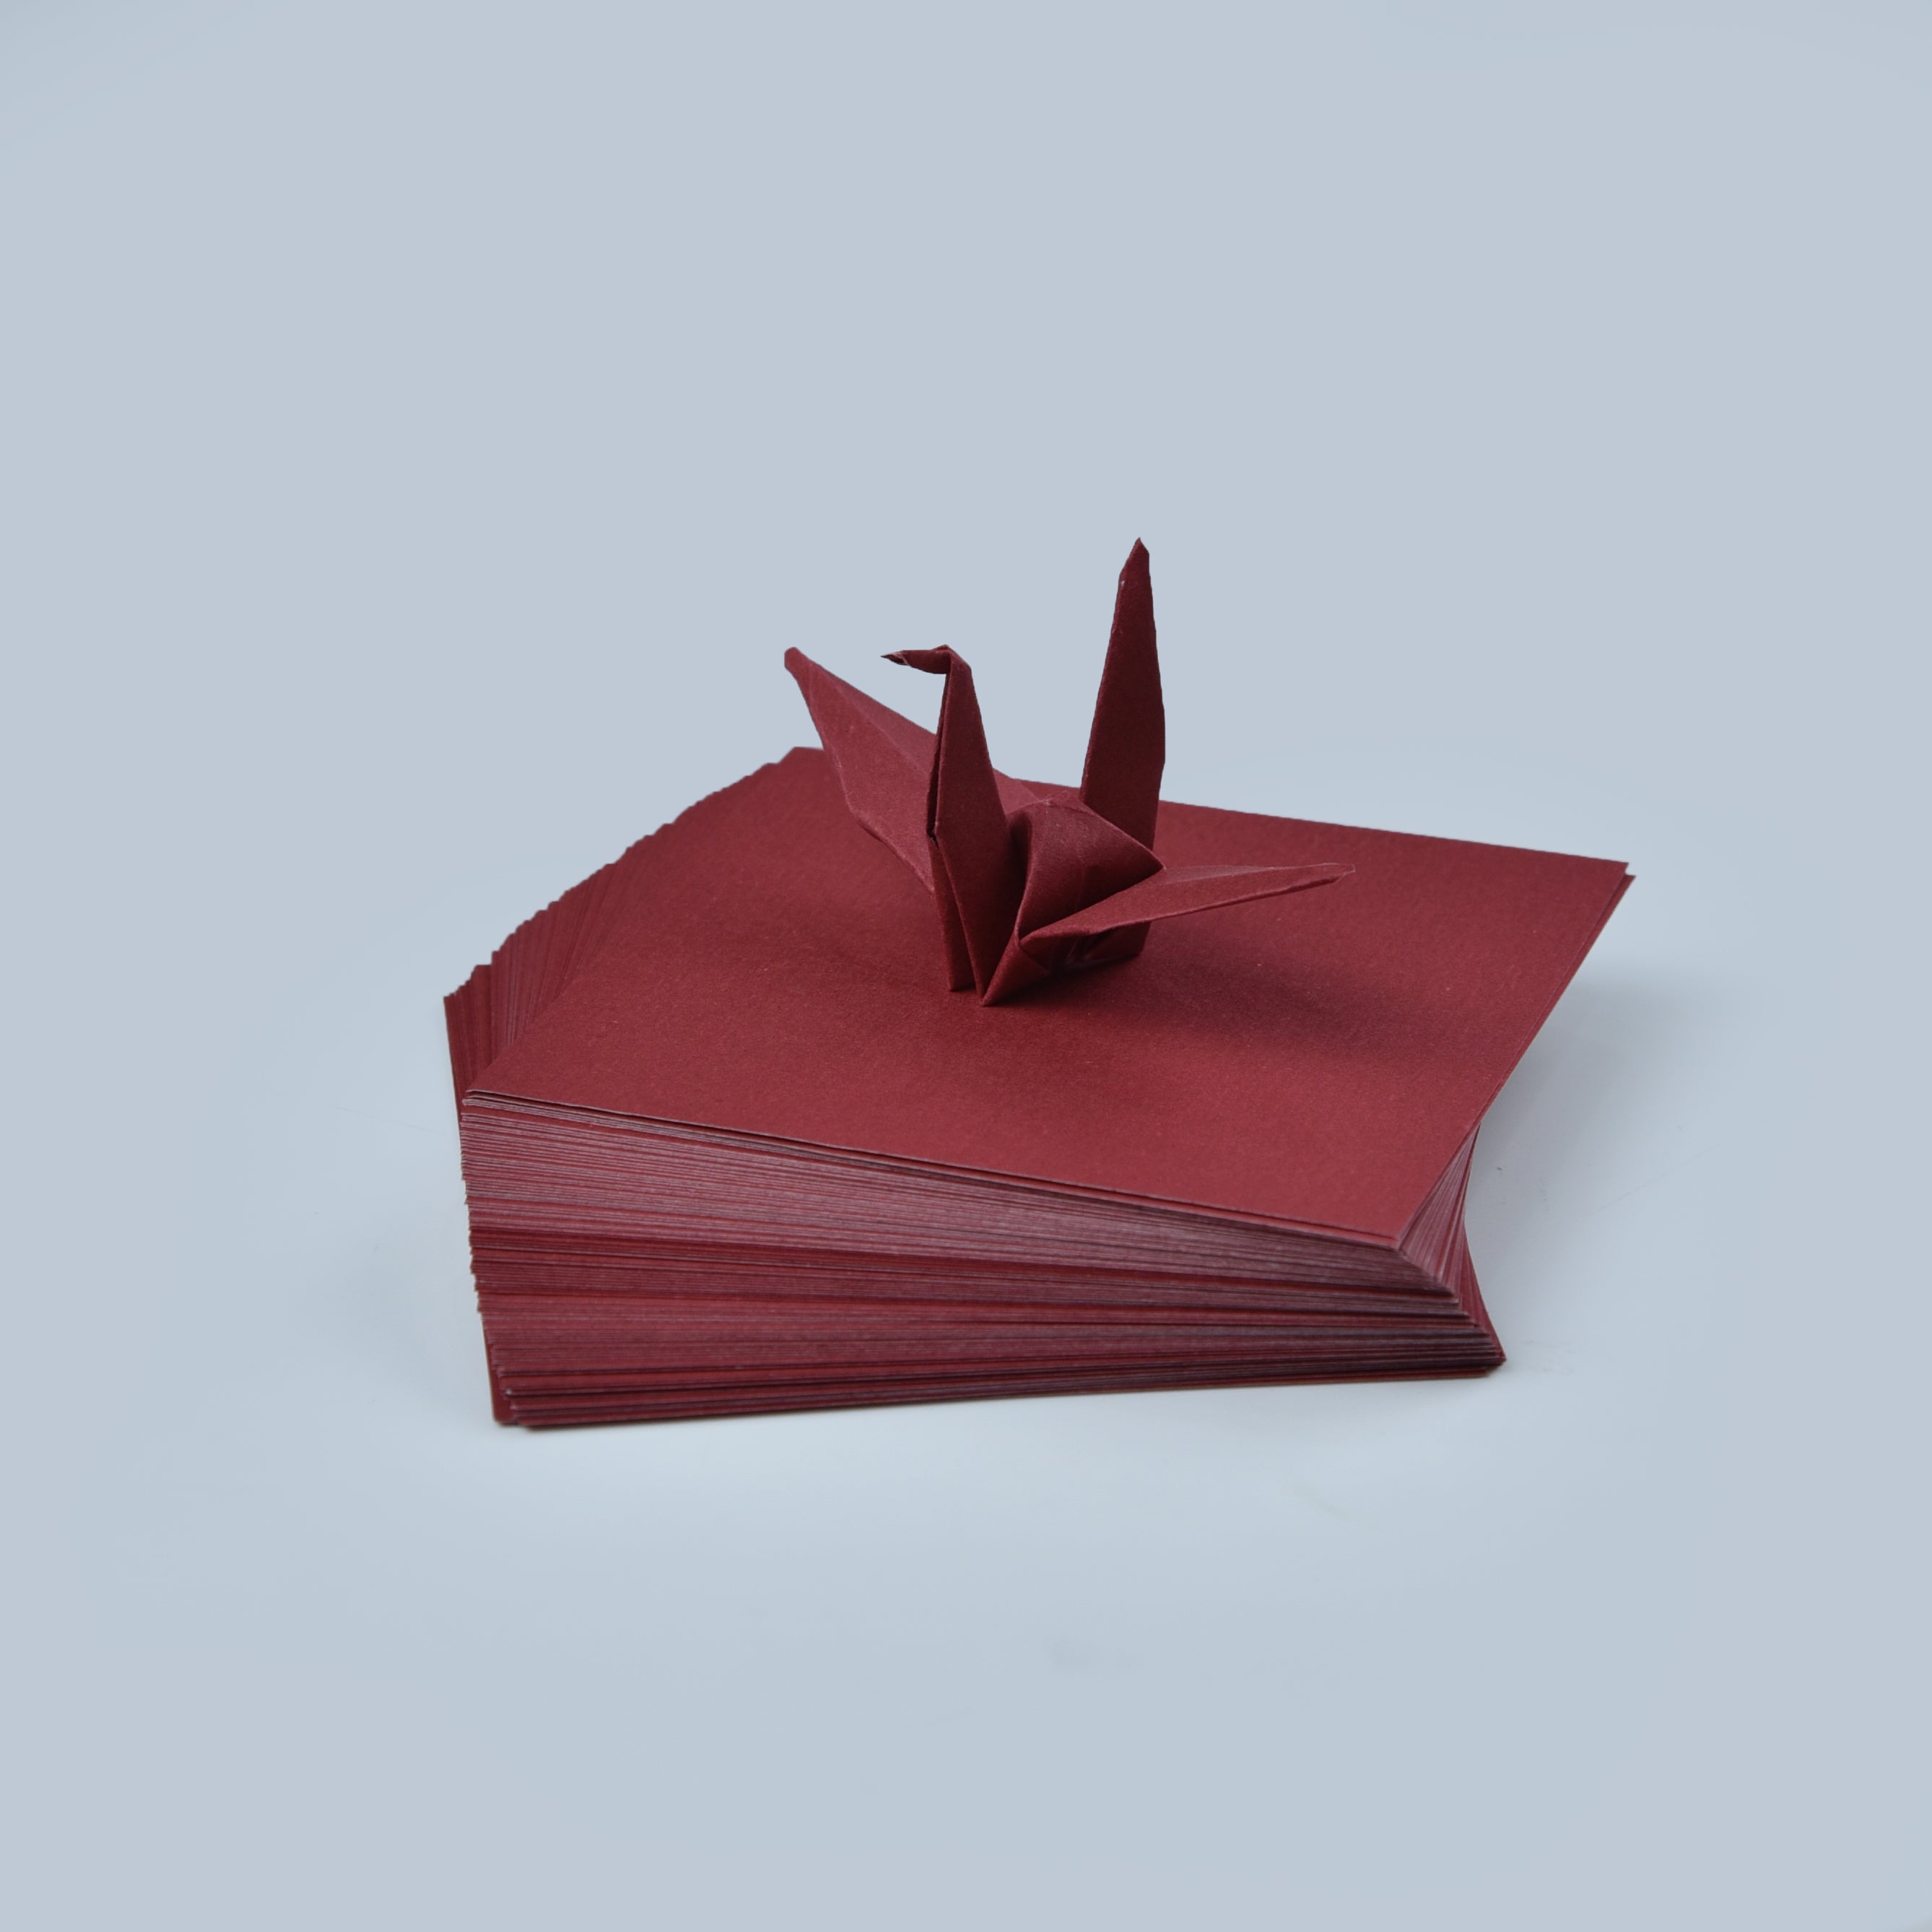 100 Hojas de Papel Origami - 3x3 pulgadas - Paquete de Papel Cuadrado para Plegar, Grullas de Origami y Decoración - S06